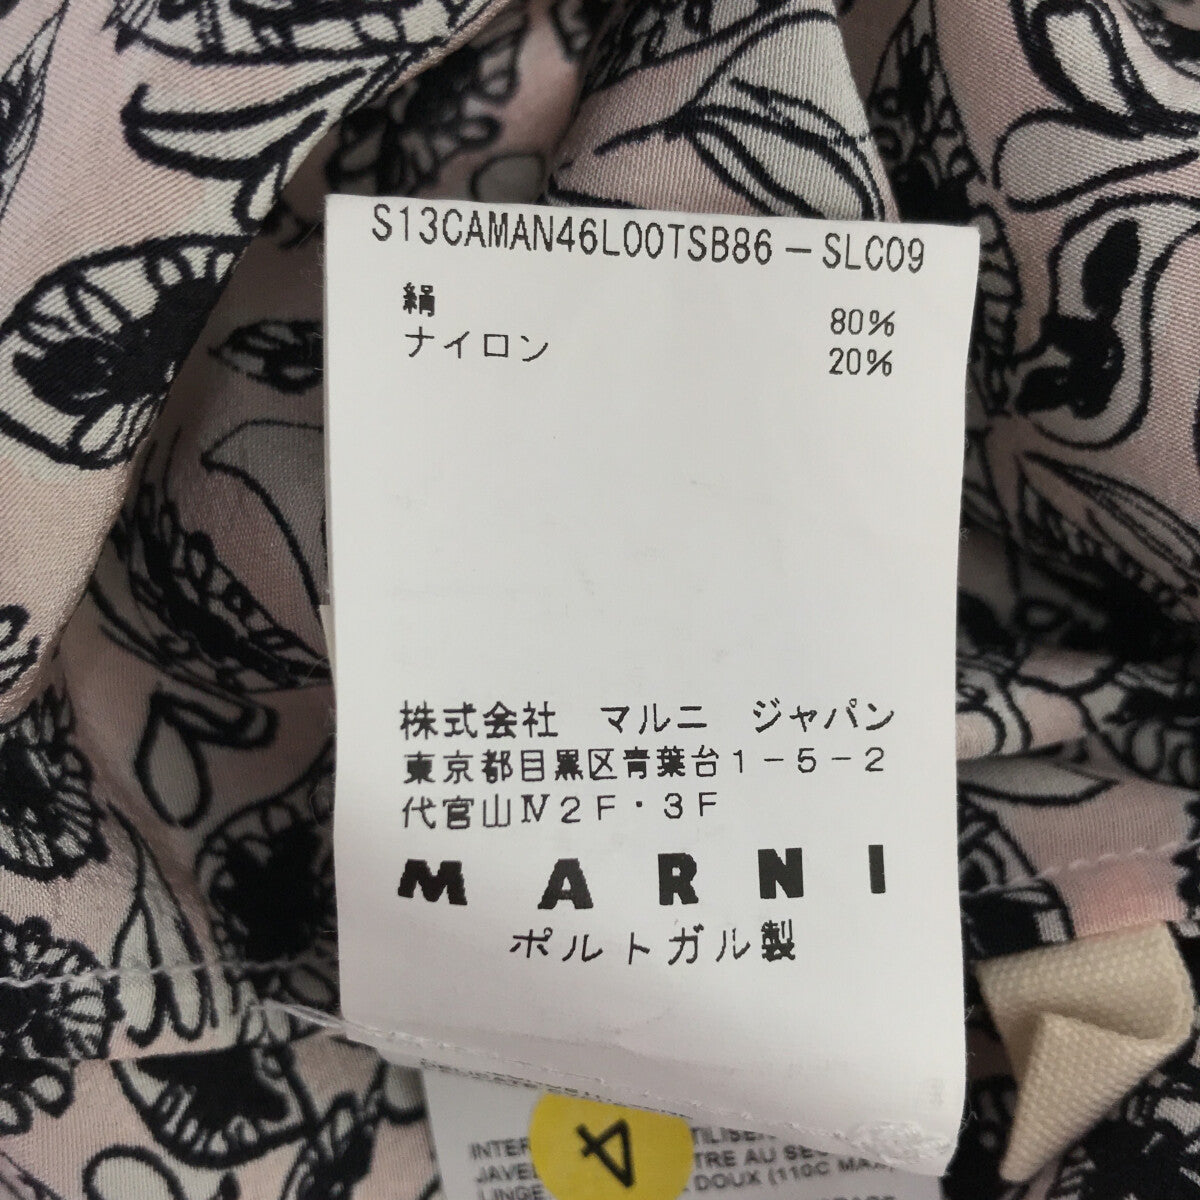 MARNI / マルニ | シルク 総柄 ジップアップ リブ トップス | 38